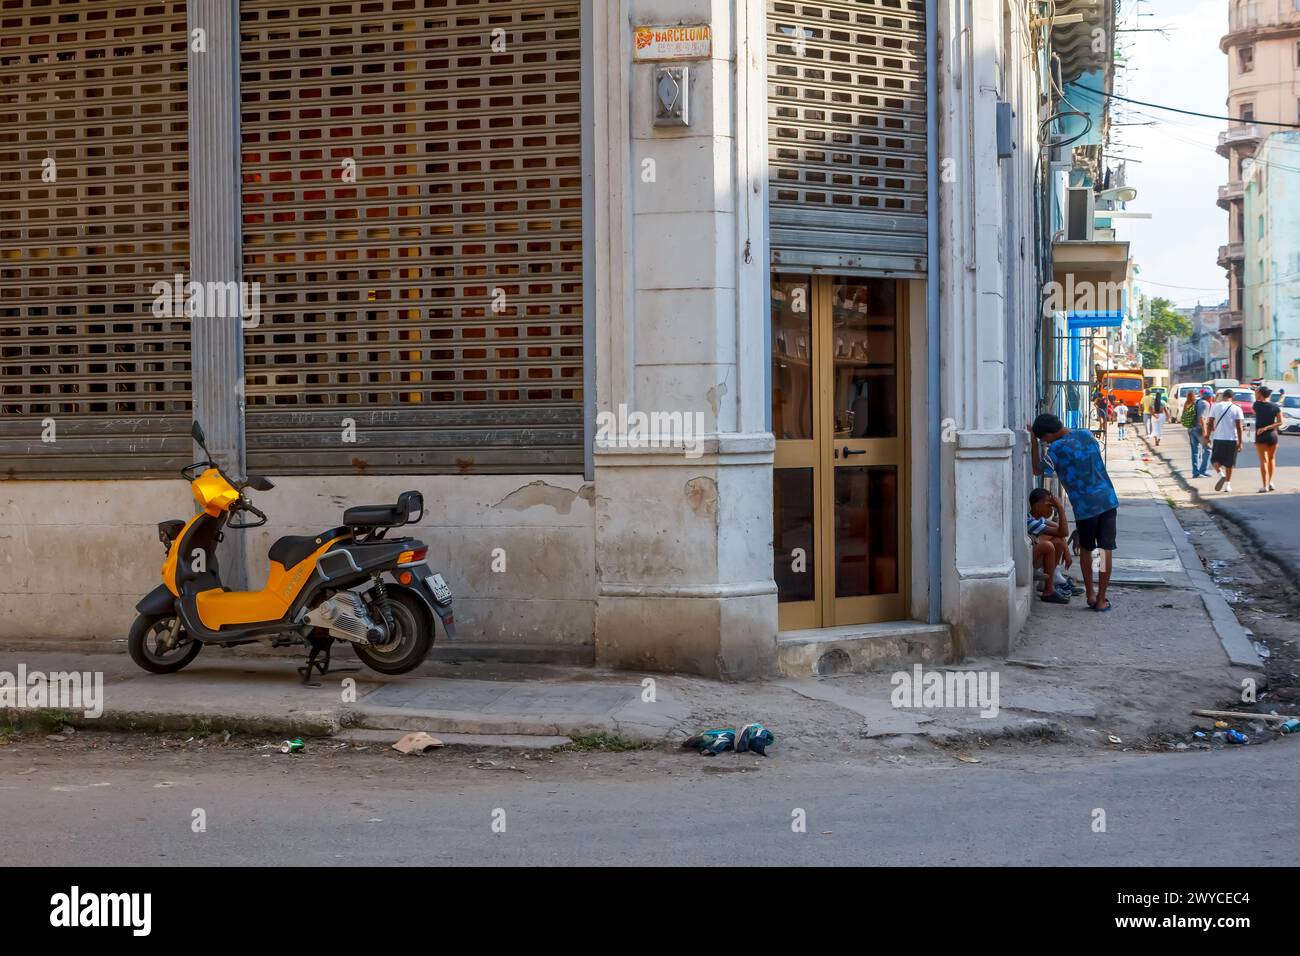 Elektro- oder E-Bike auf einem beschädigten Gehweg bei einem verwitterten Fassadengebäude in Havanna, Kuba Stockfoto